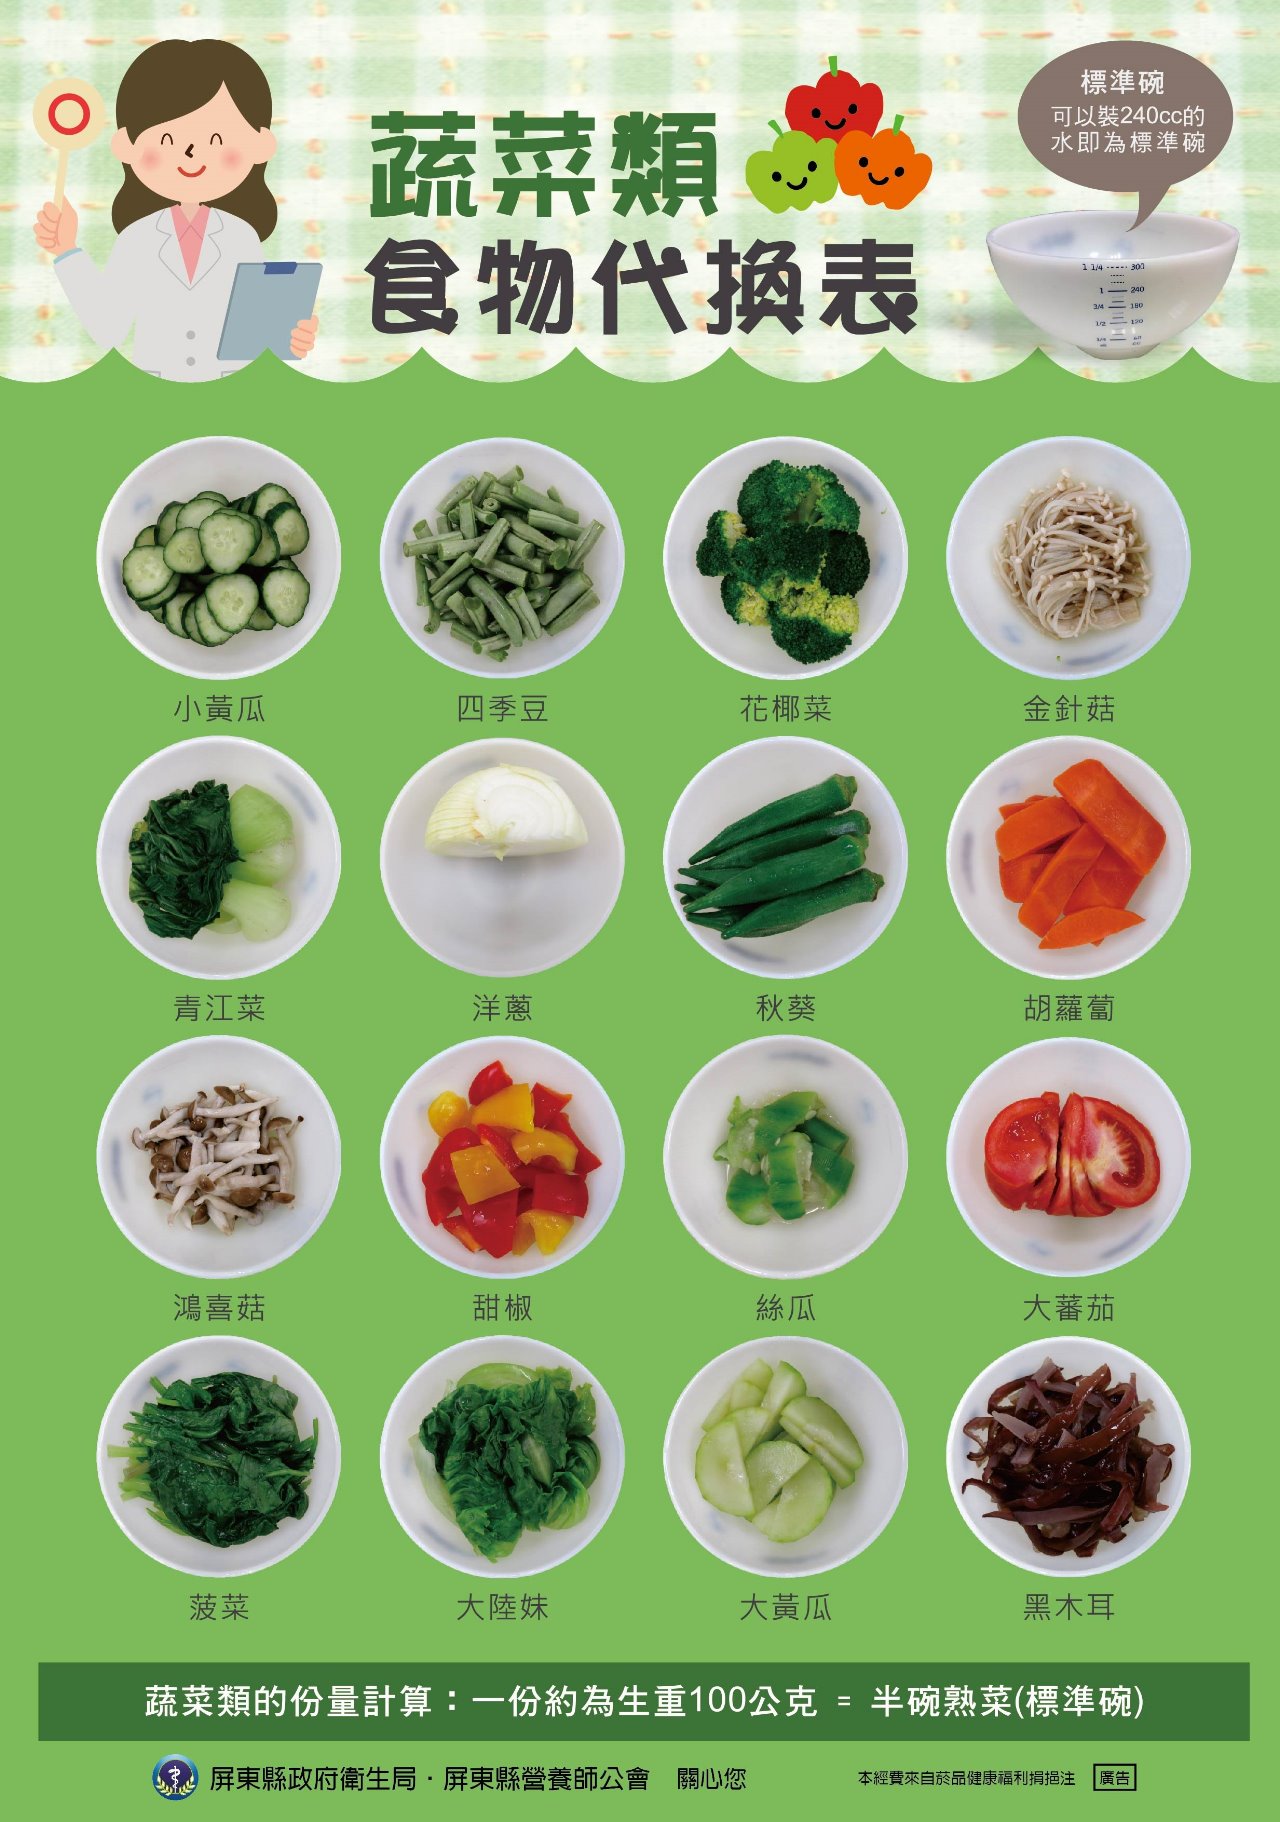 蔬菜類、水果類食物代換表(天天5蔬果)文章照片